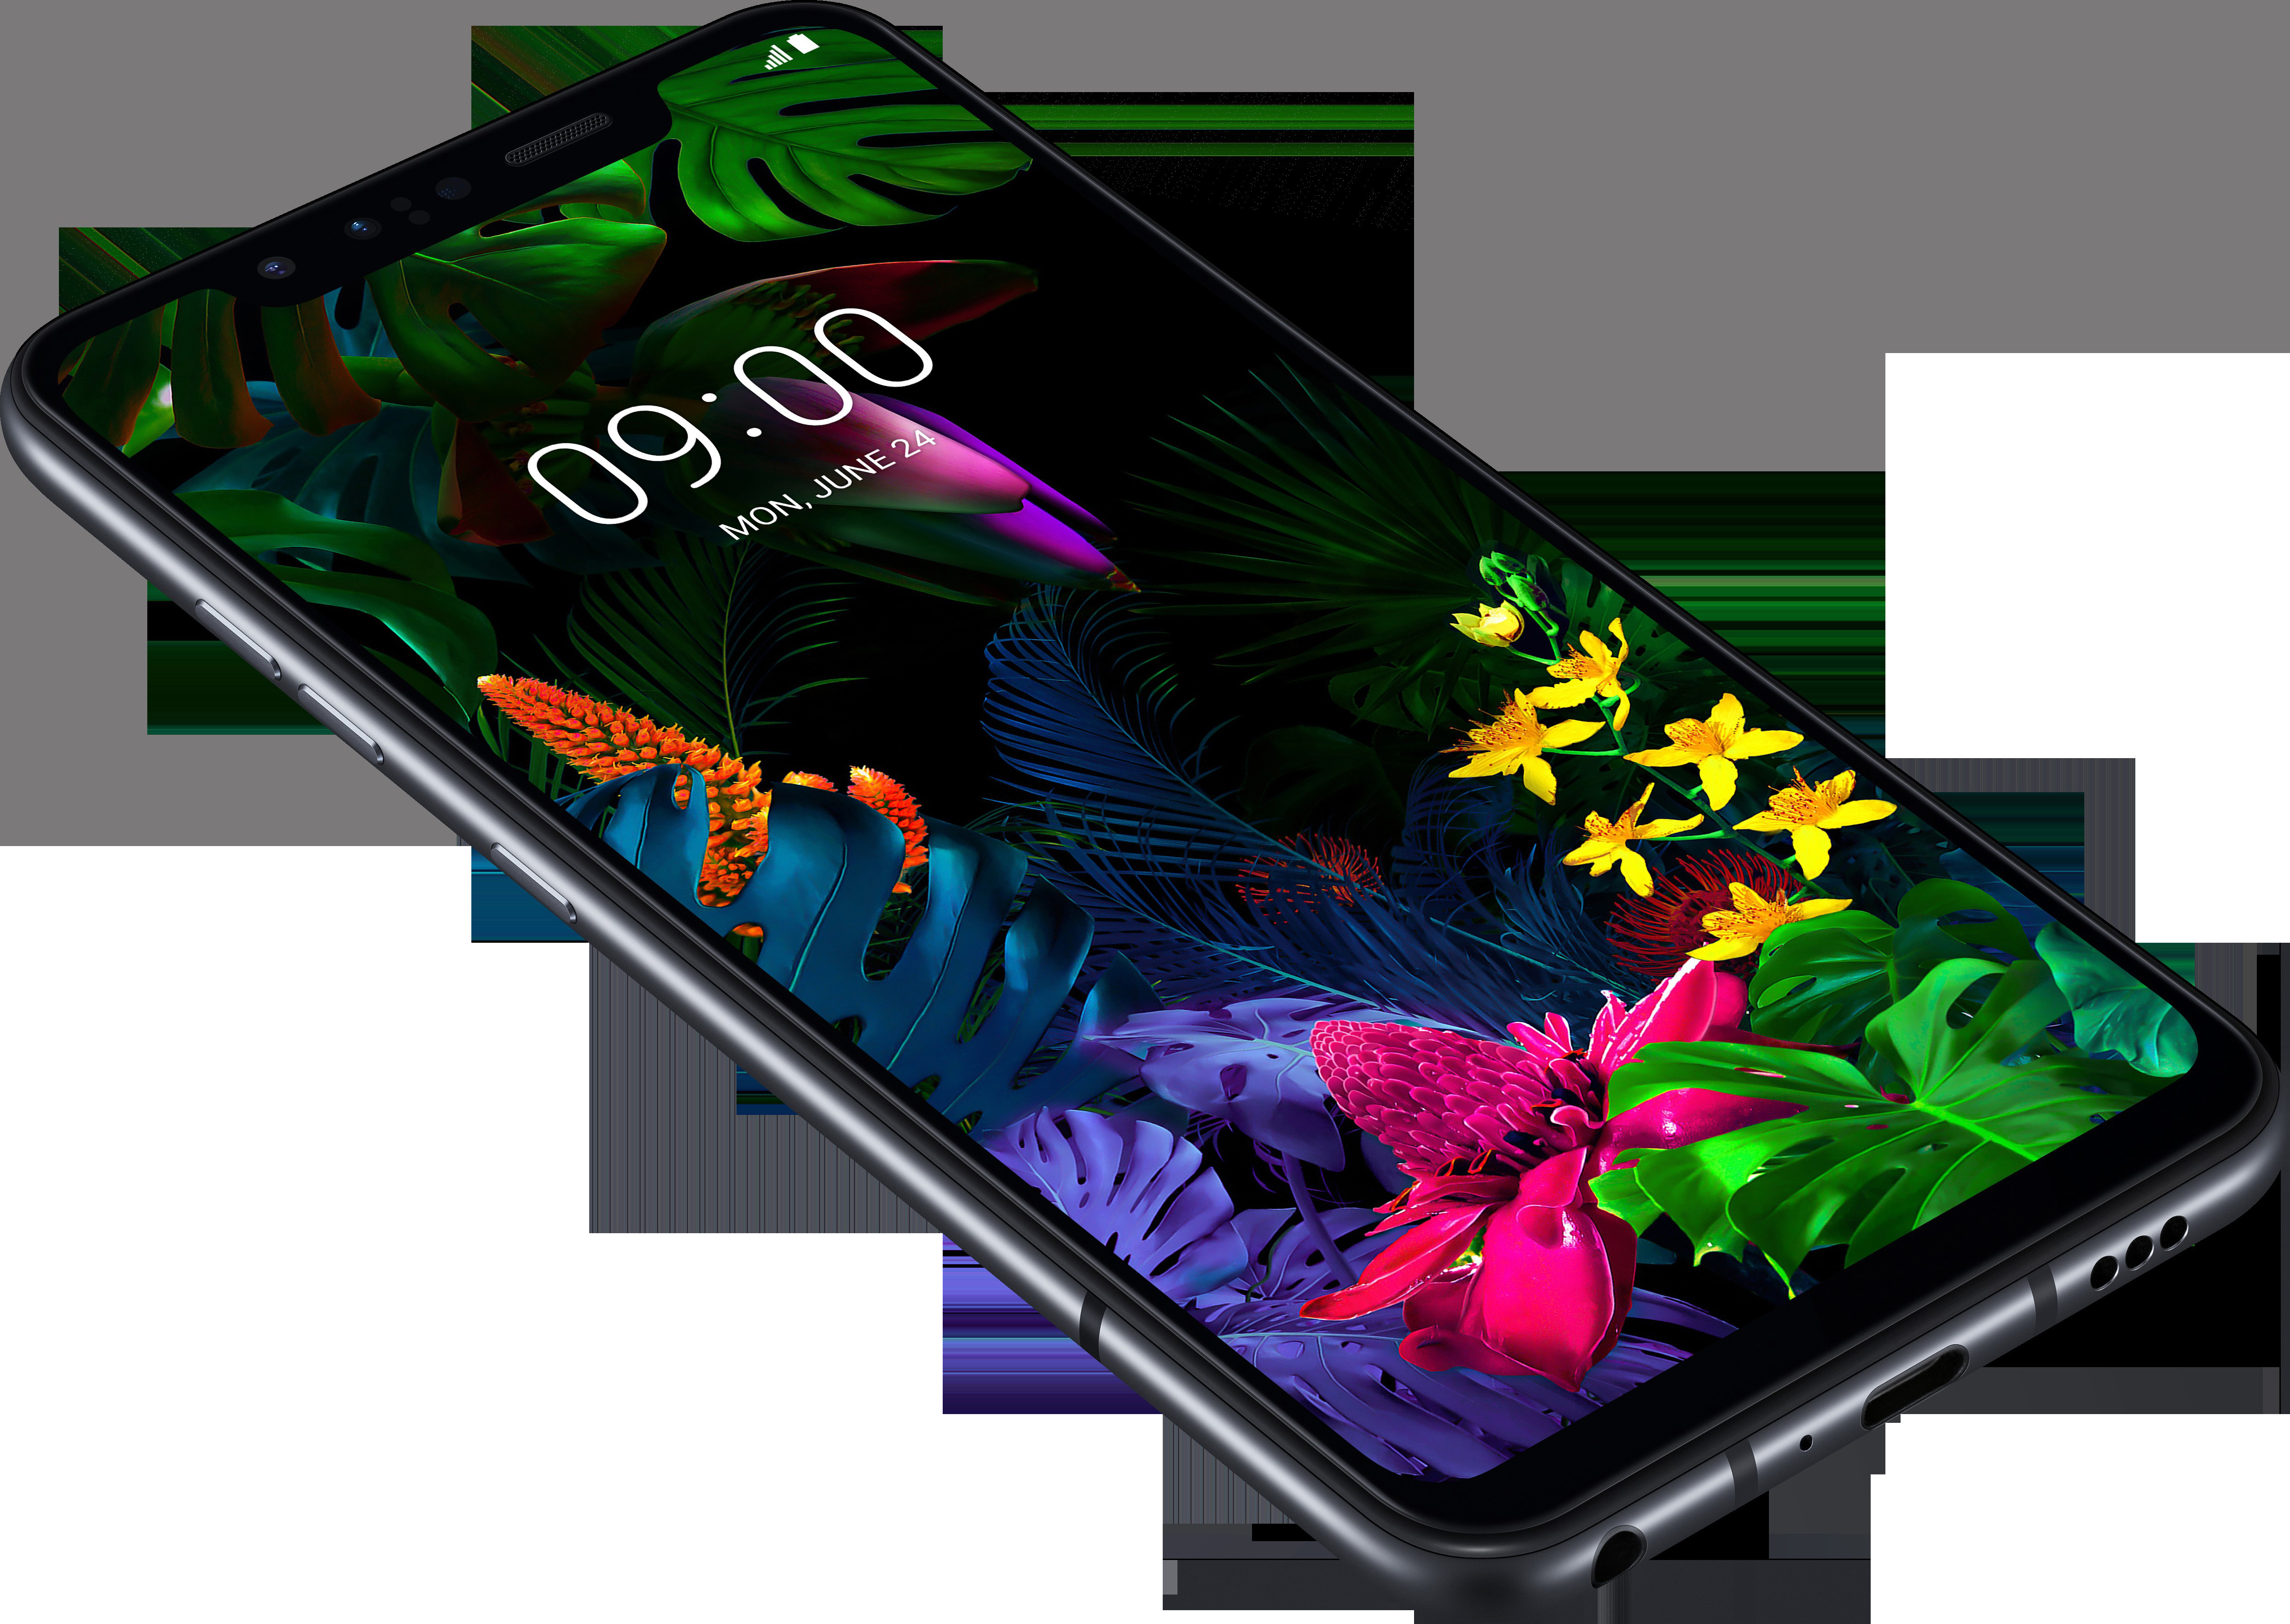 LG G8S ThinQ 128 GB Dual Mirror Black SIM